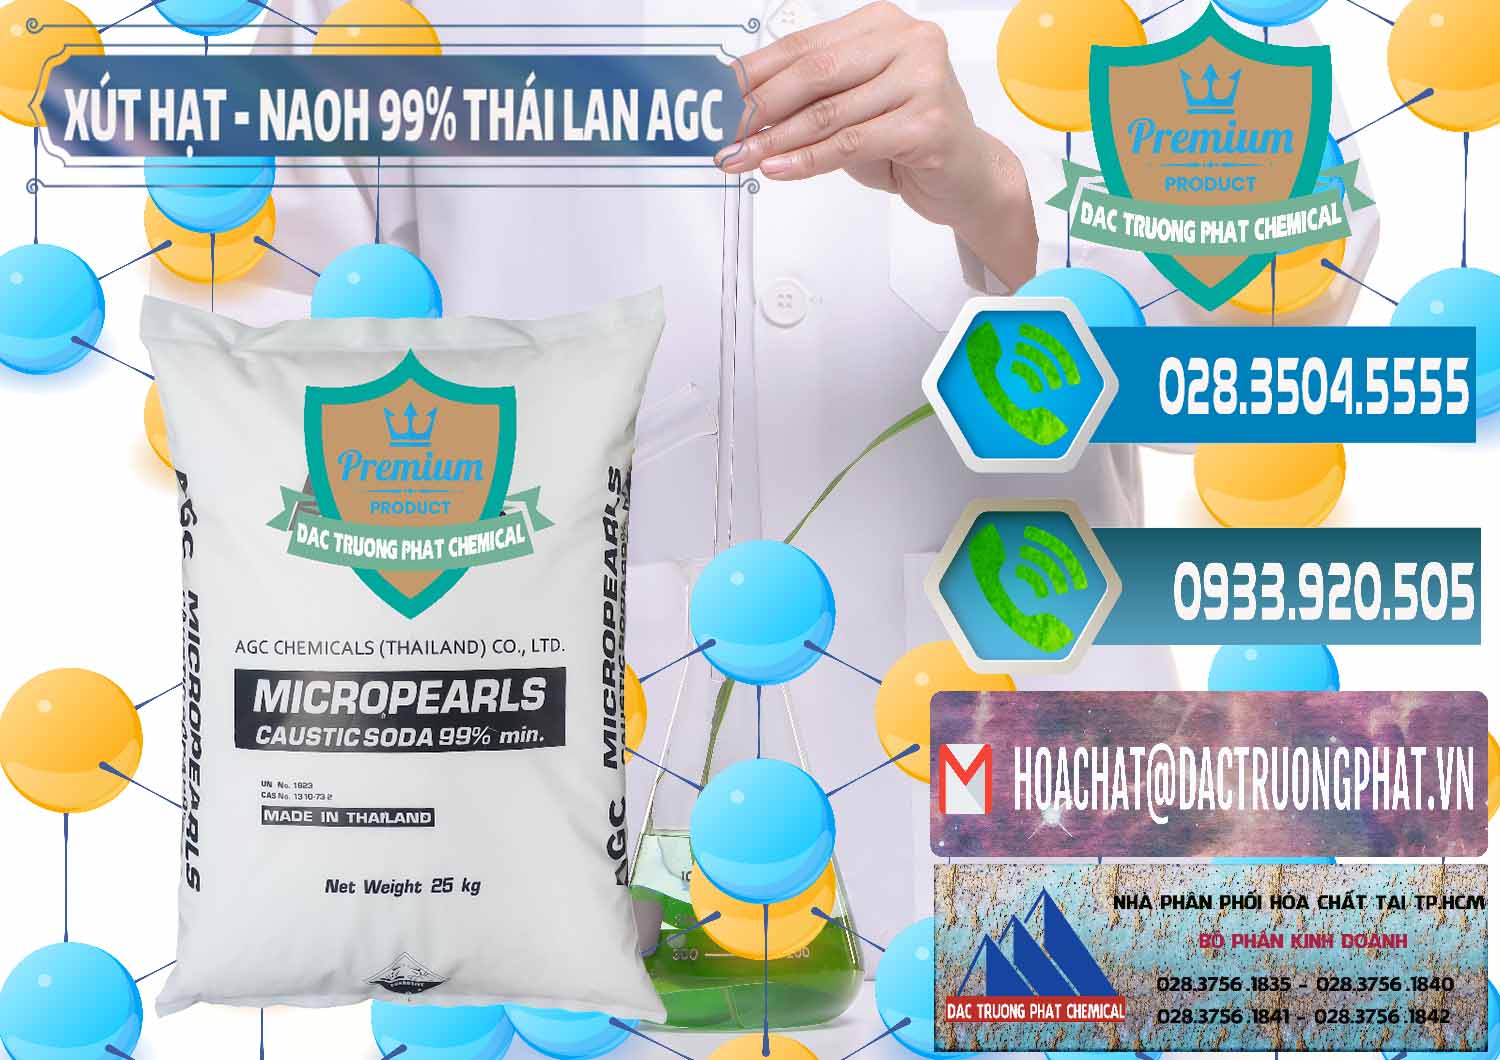 Nơi chuyên cung cấp và bán Xút Hạt - NaOH Bột 99% AGC Thái Lan - 0168 - Cty chuyên phân phối - kinh doanh hóa chất tại TP.HCM - congtyhoachat.net